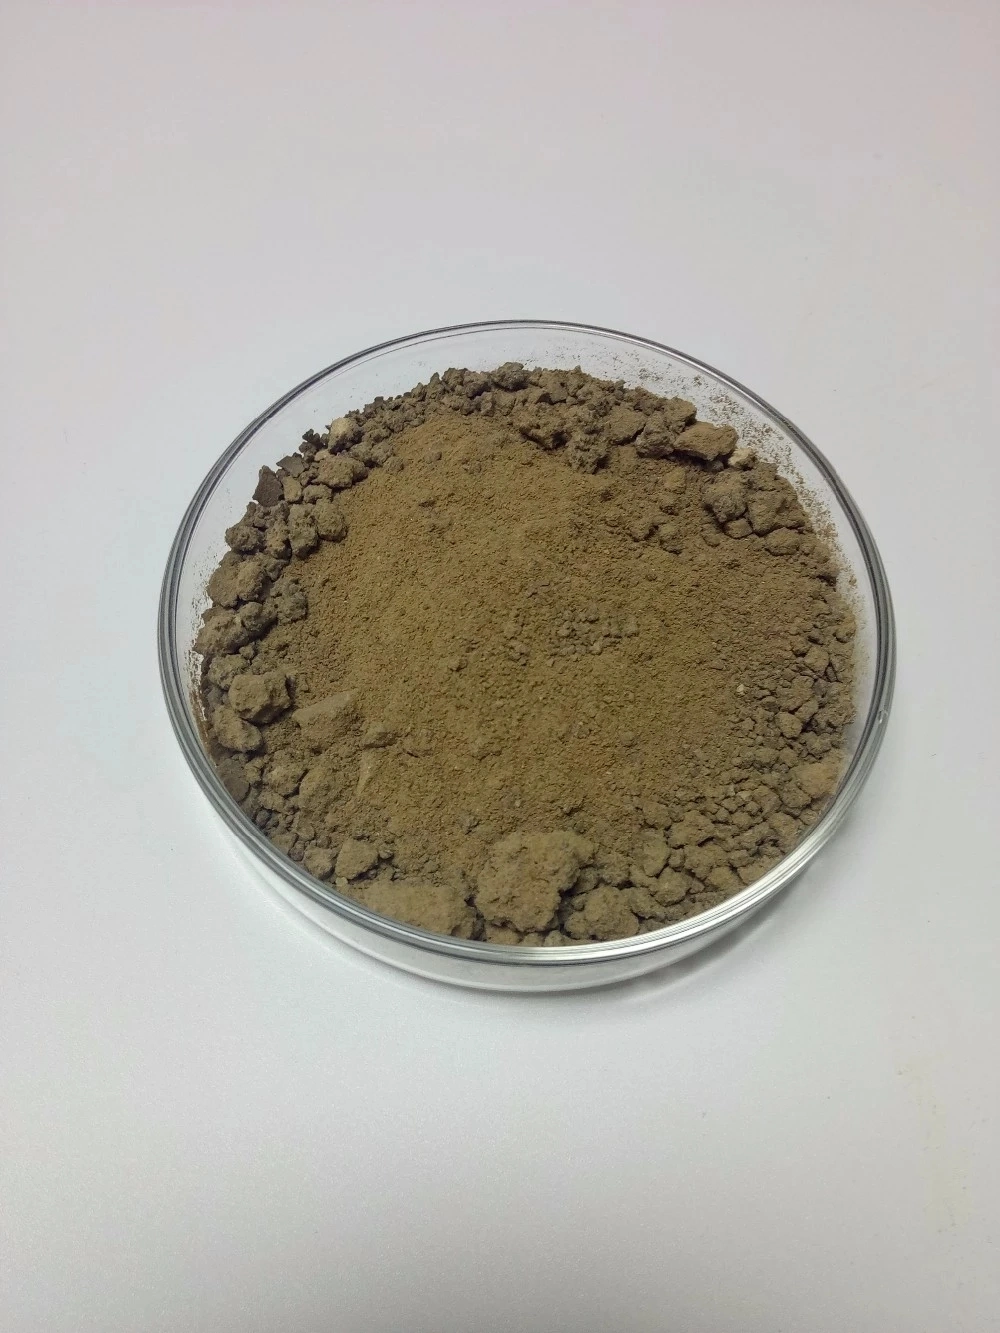 High Quality CAS 3375-31-3 Palladium (II) Acetate/Palladium Acetate